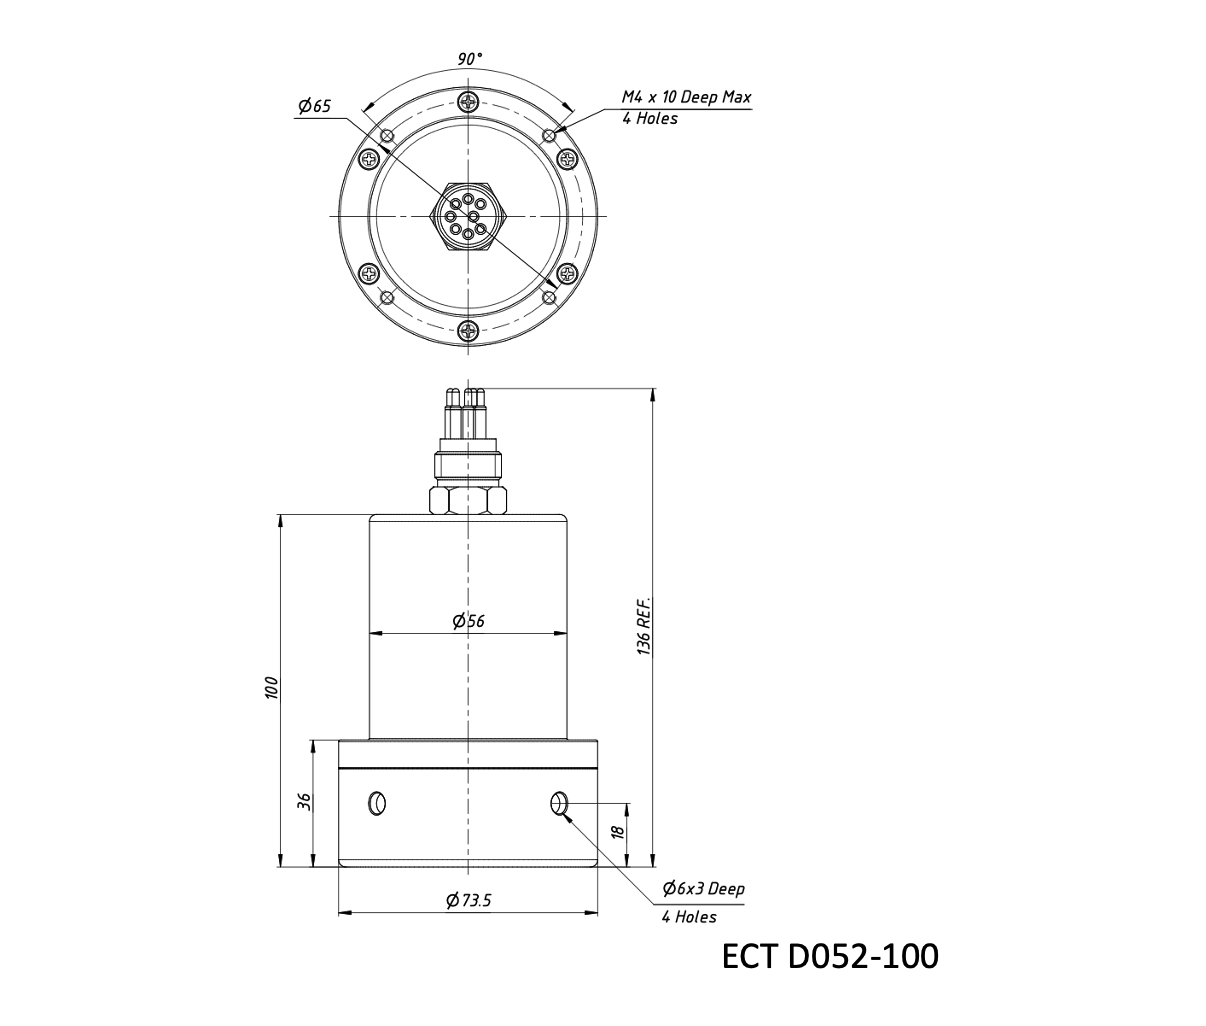 Echologger Echosounder ECT D032-100 dimensions